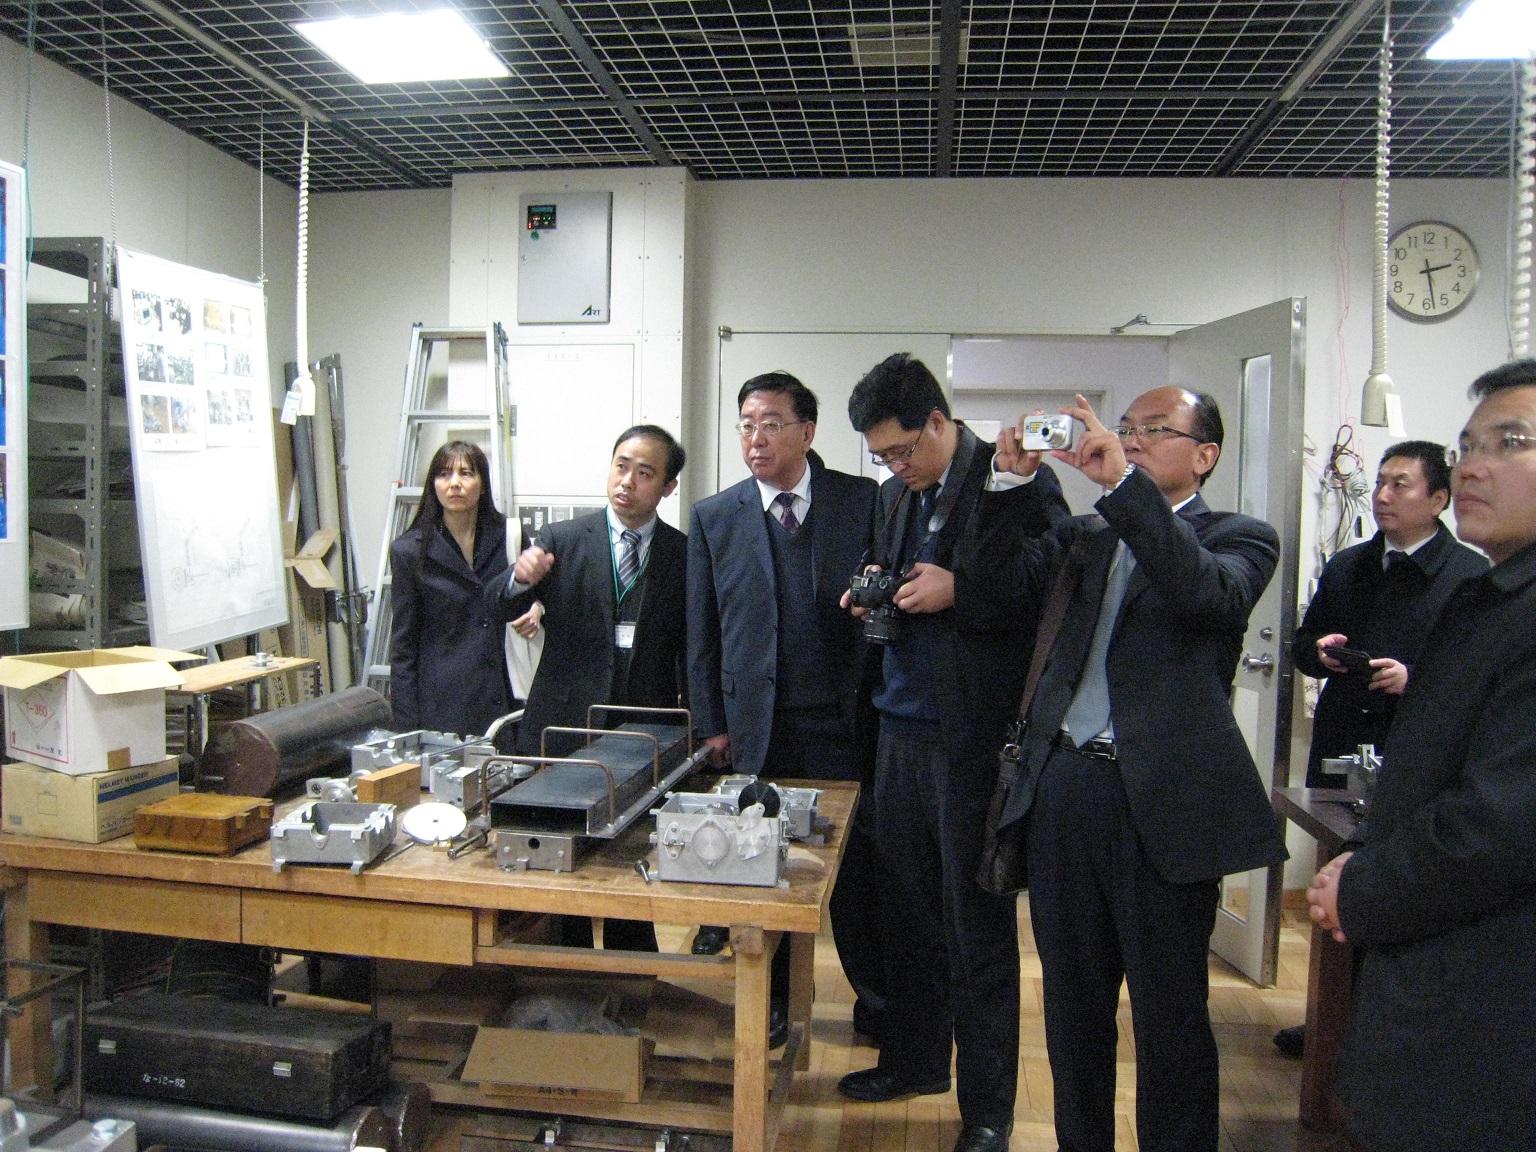 7人のスーツの男女が専門学校のさまざまな工具が置かれた部屋で写真を撮っている写真